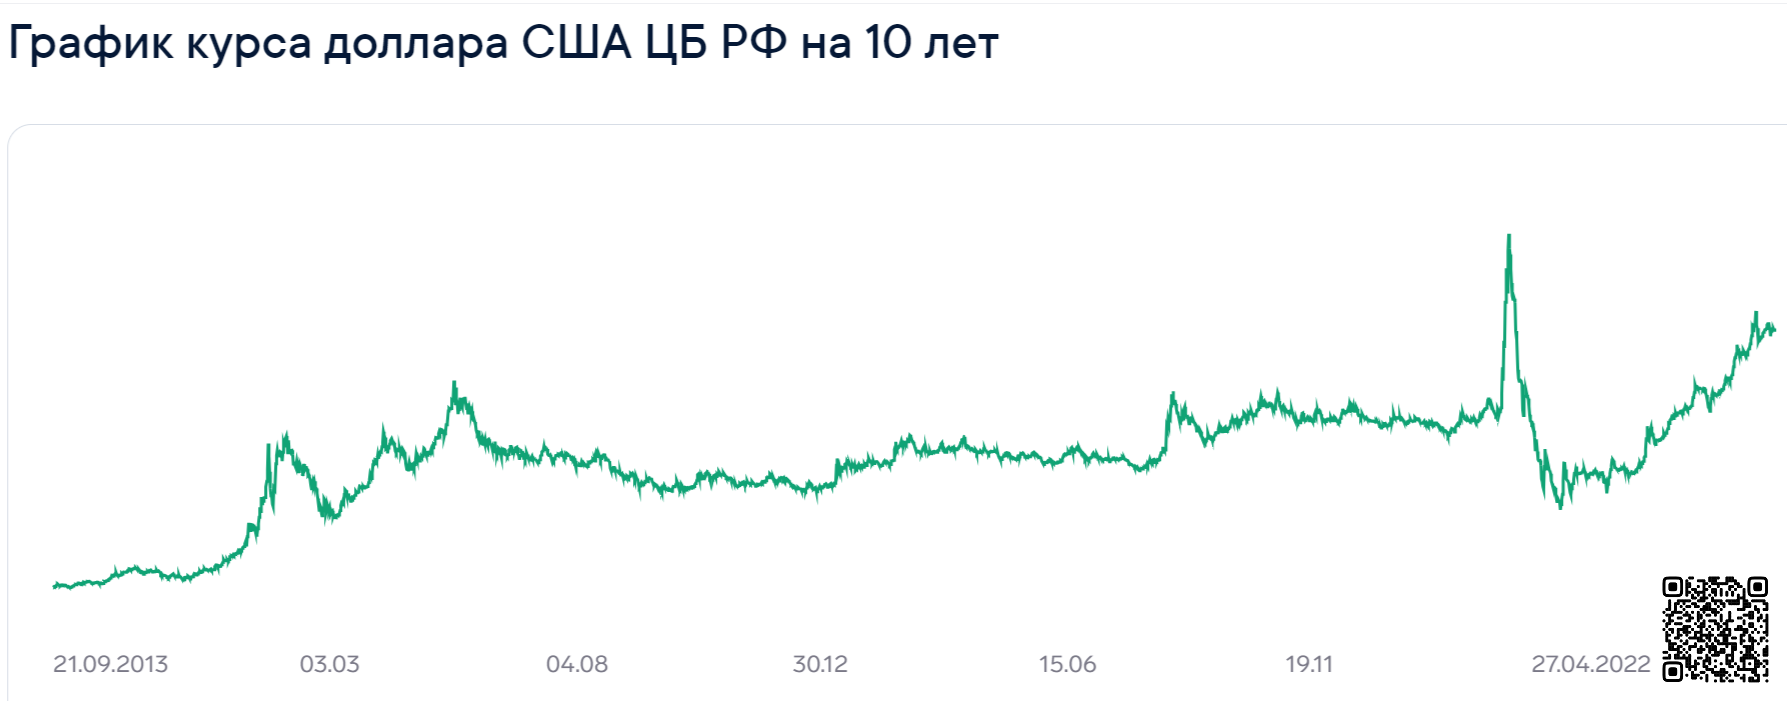 График курса рубля за последние 10 лет